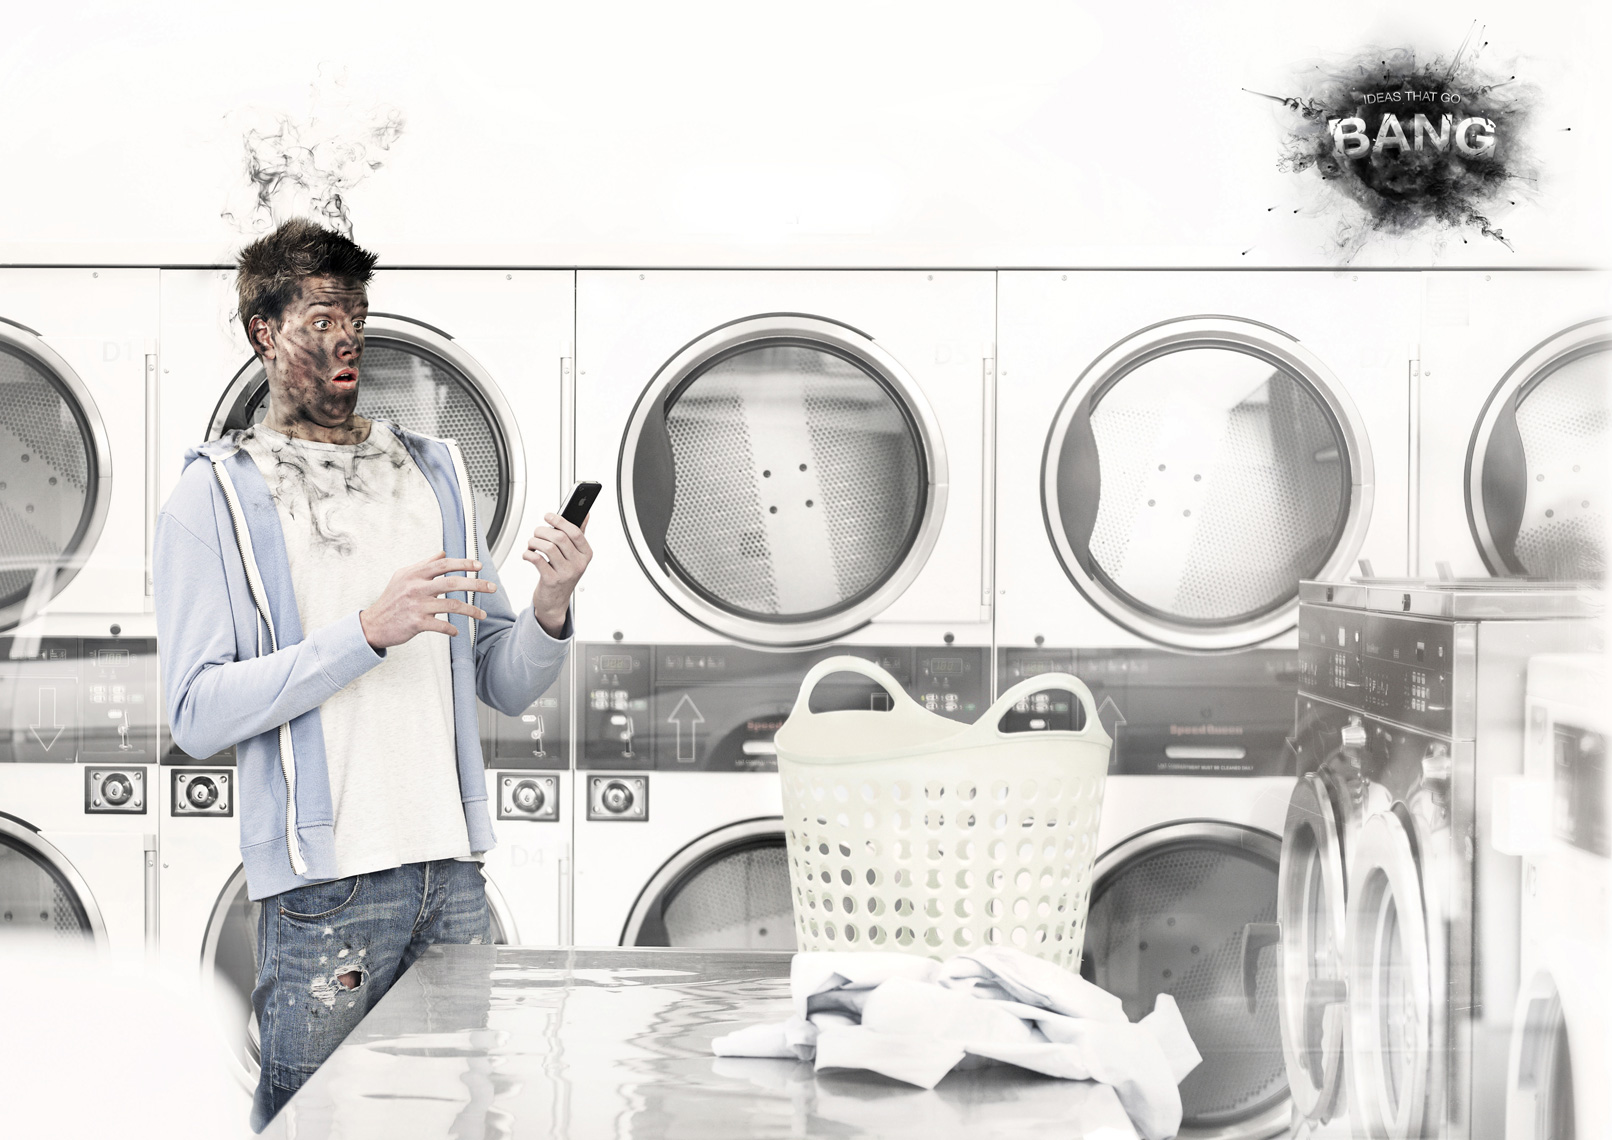 Bang_Laundry.jpg